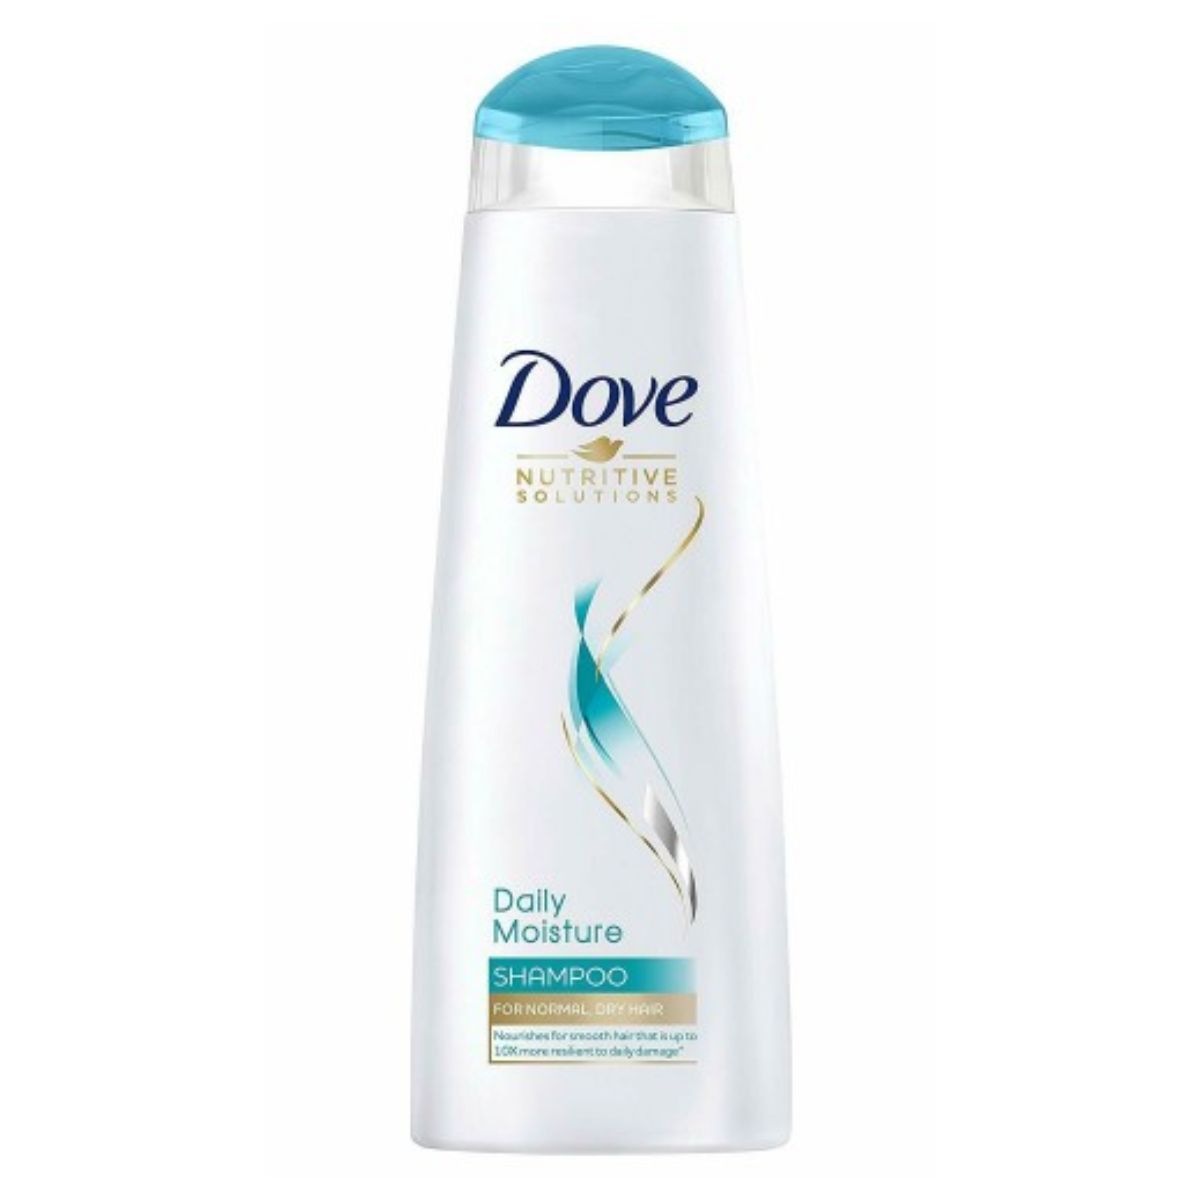 Dove - Daily Moisture Shampoo - 250ml.